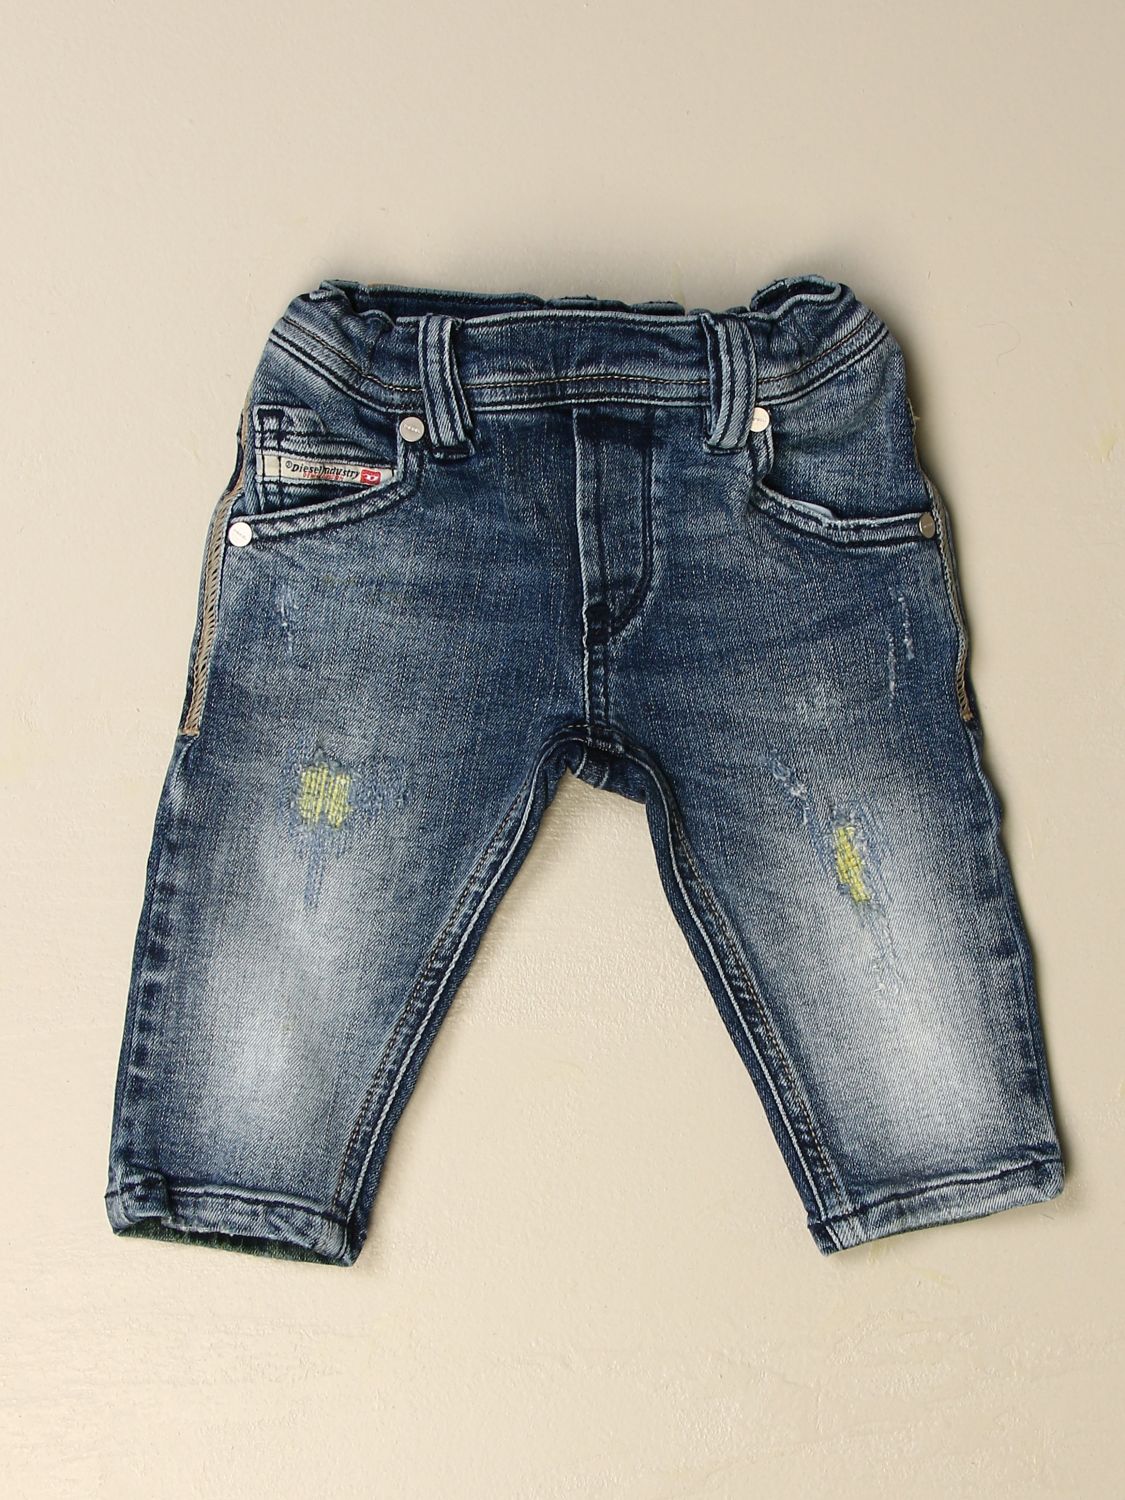 diesel jeans pocket designs